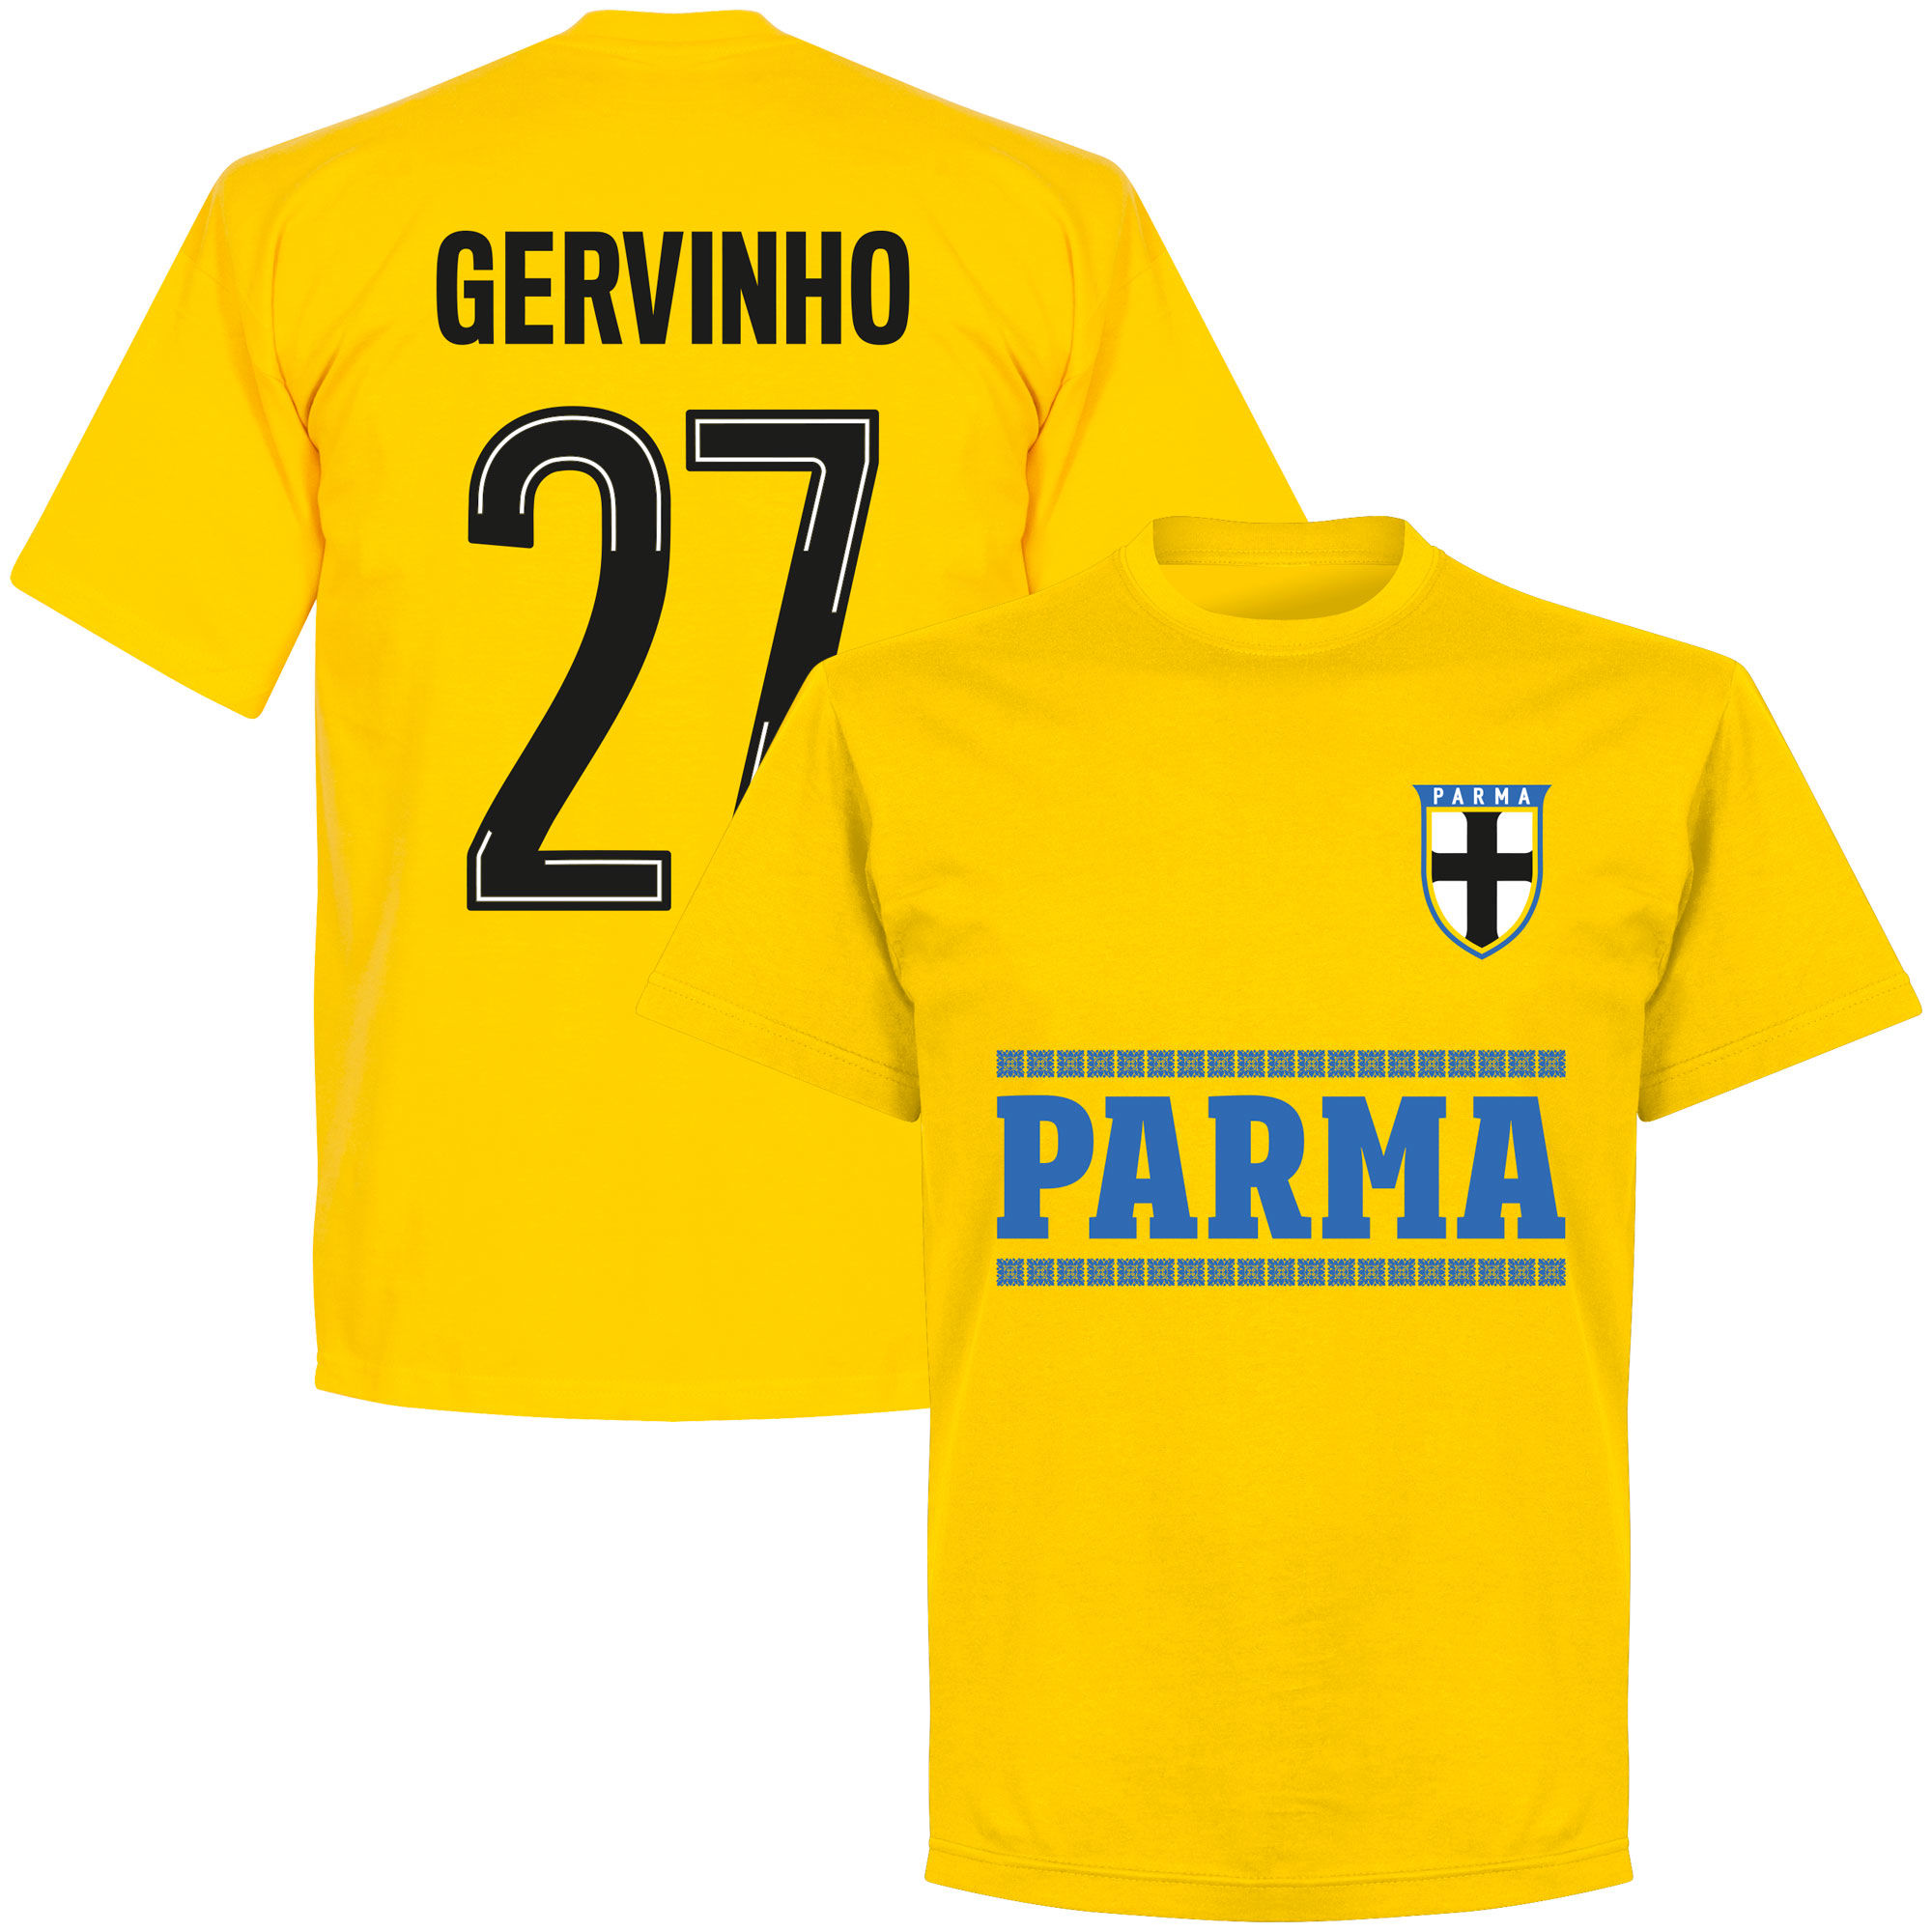 Parma Calcio 1913 - Tričko - žluté, Gervinho, číslo 27